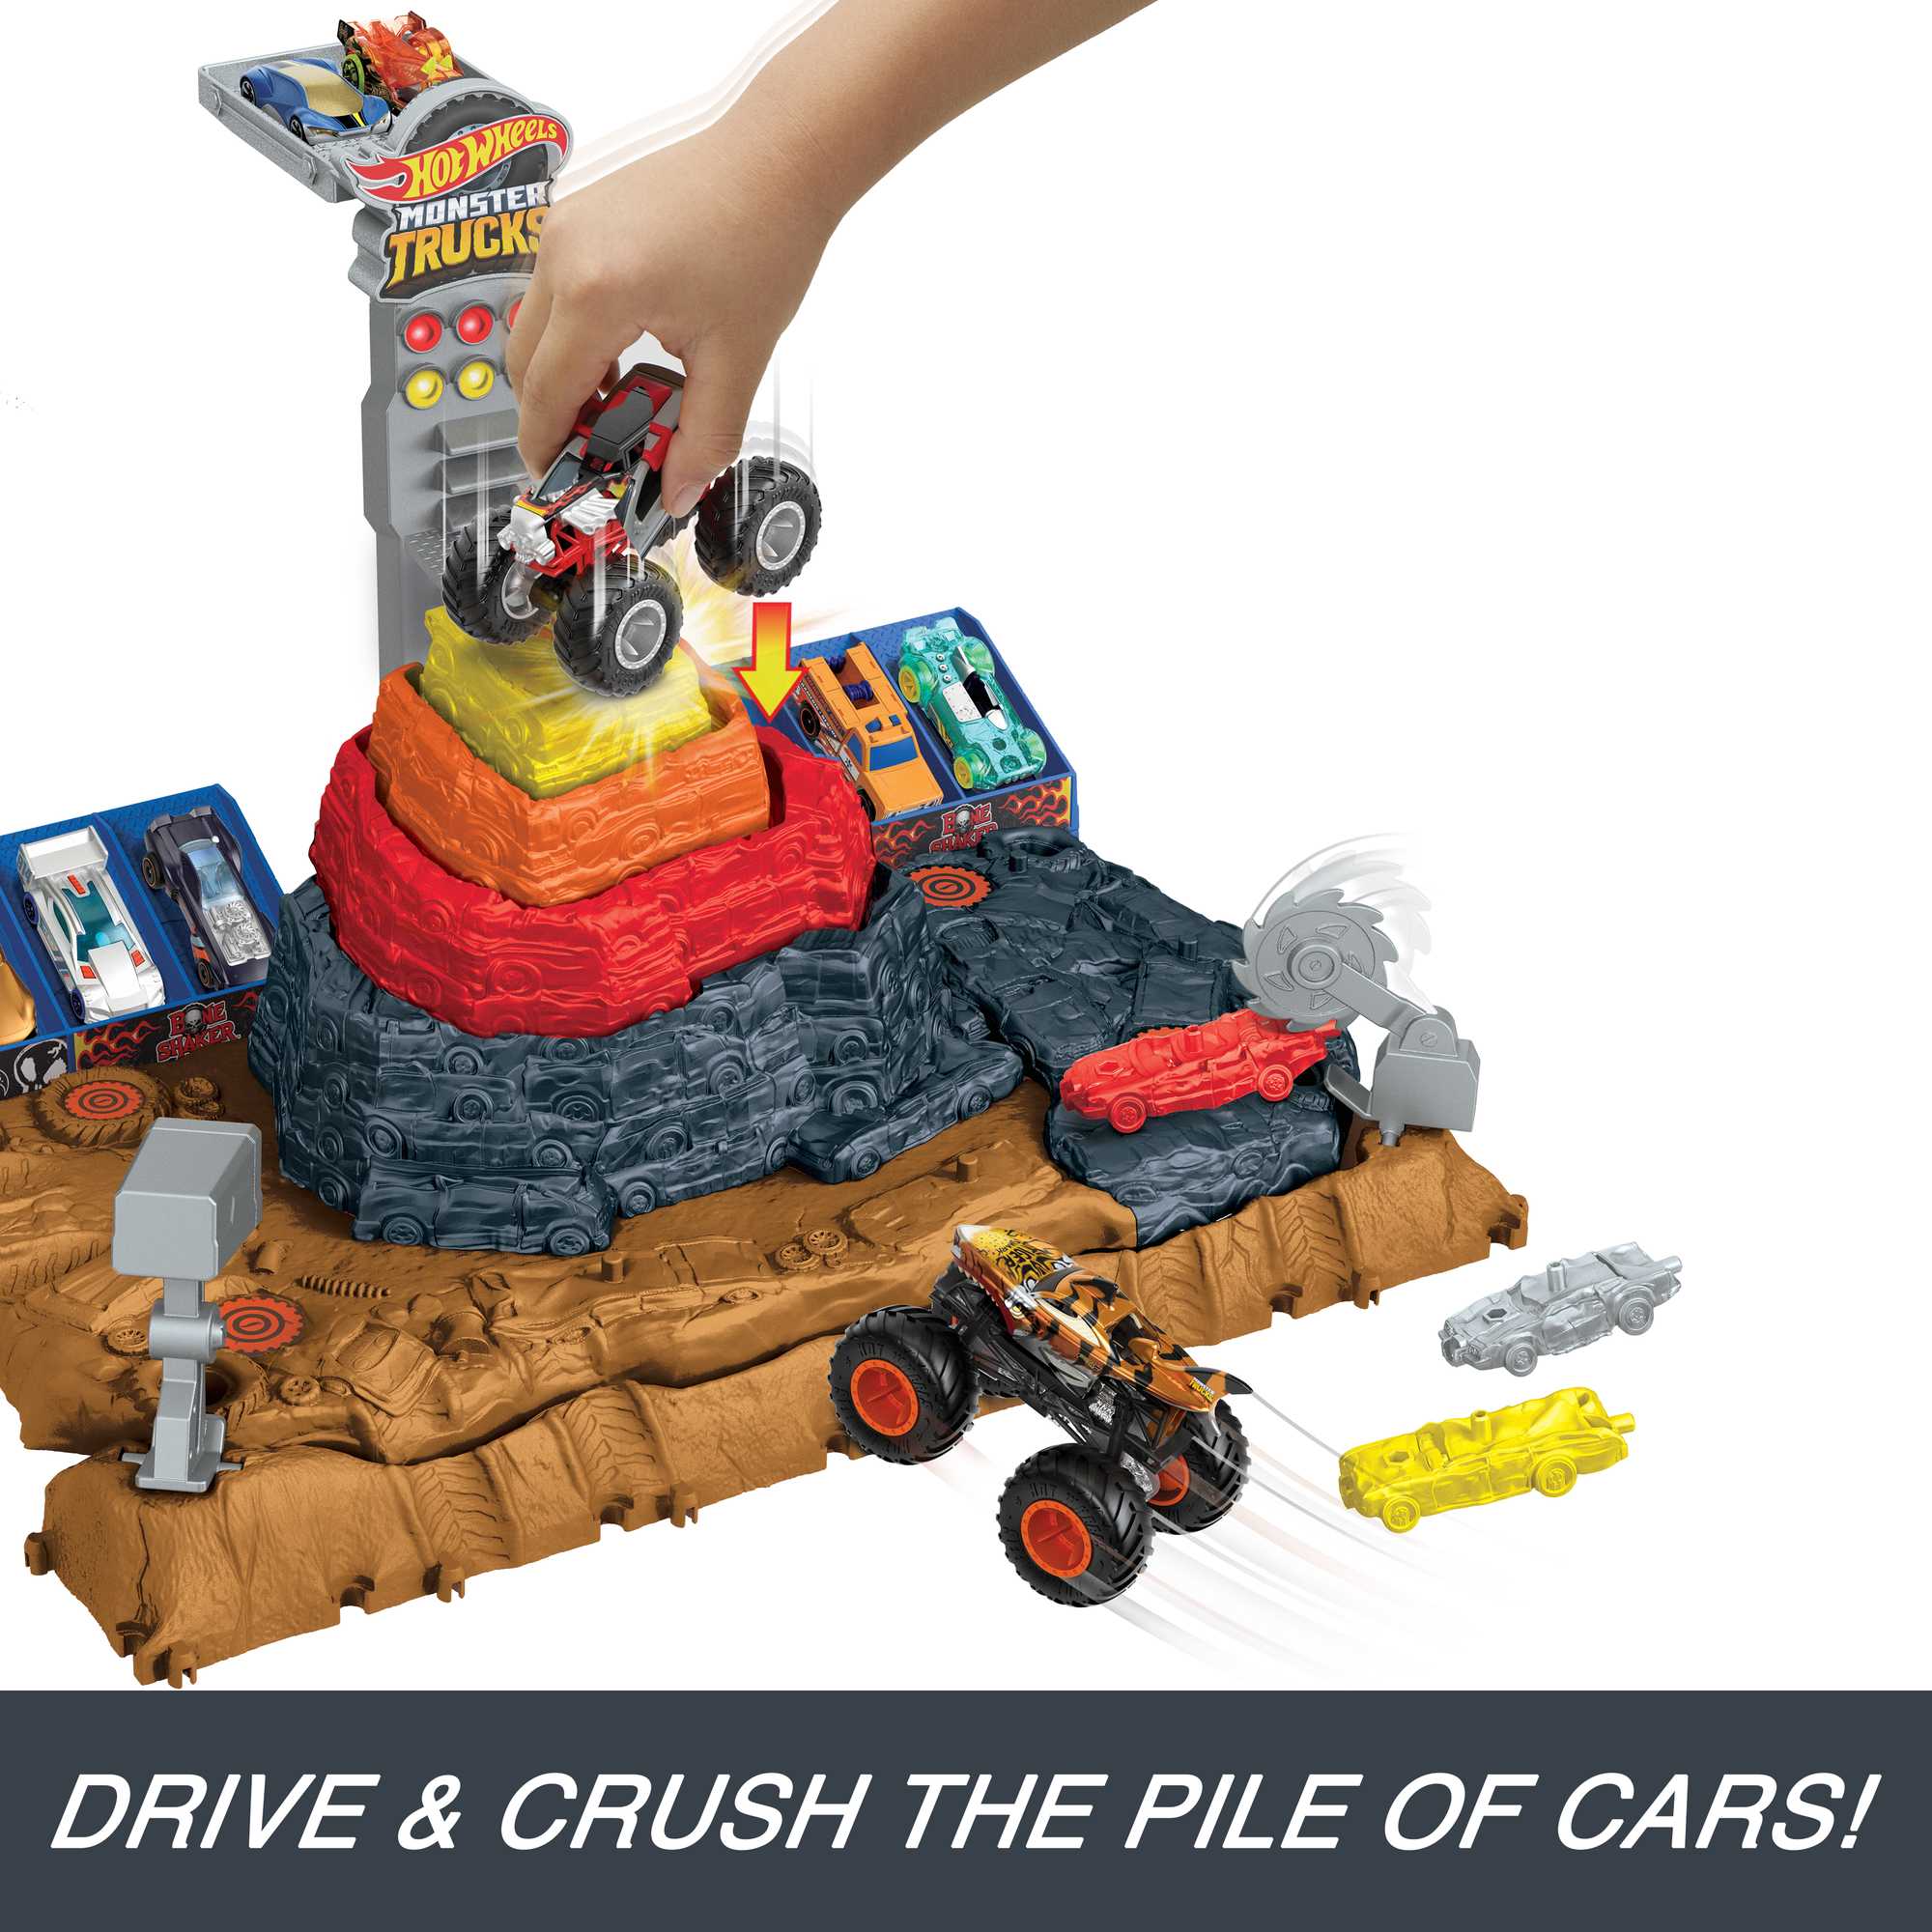 Véhicules Hot Wheels Monster Trucks Mattel : King Jouet, Les